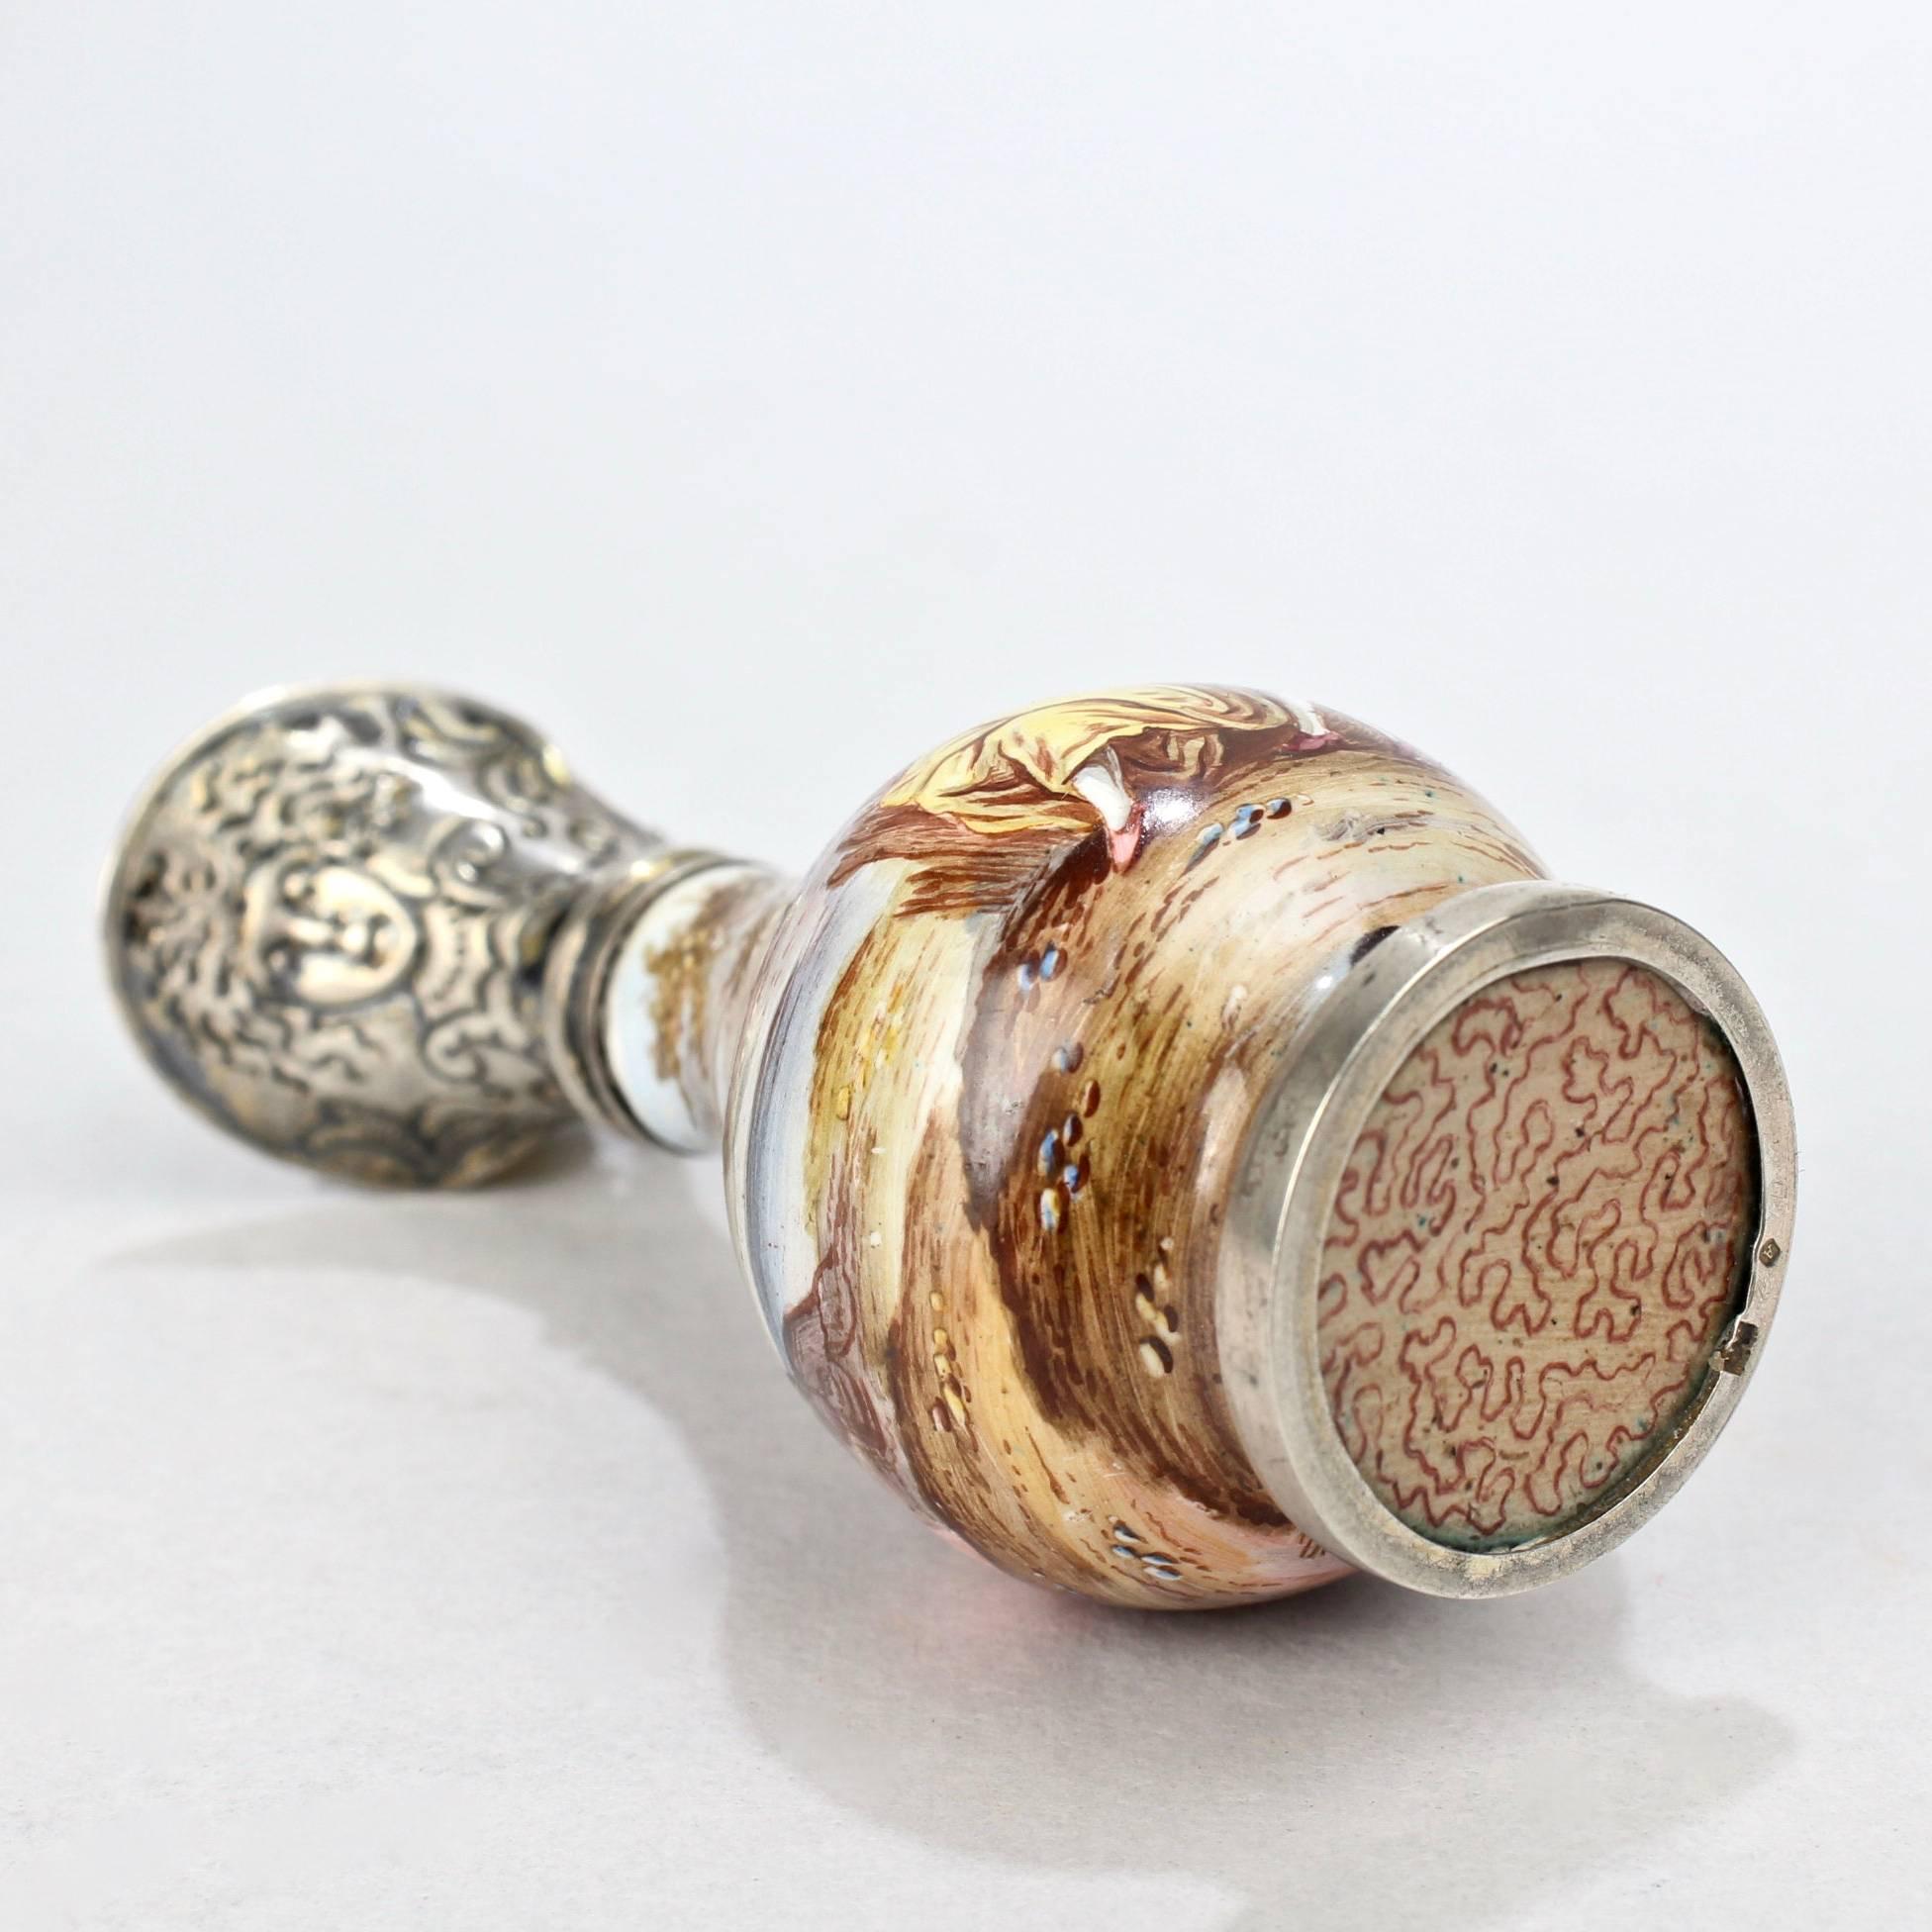 Signed Hermann Boehm Viennese Enamel & Silver Miniature Ewer Form Perfume Bottle 3